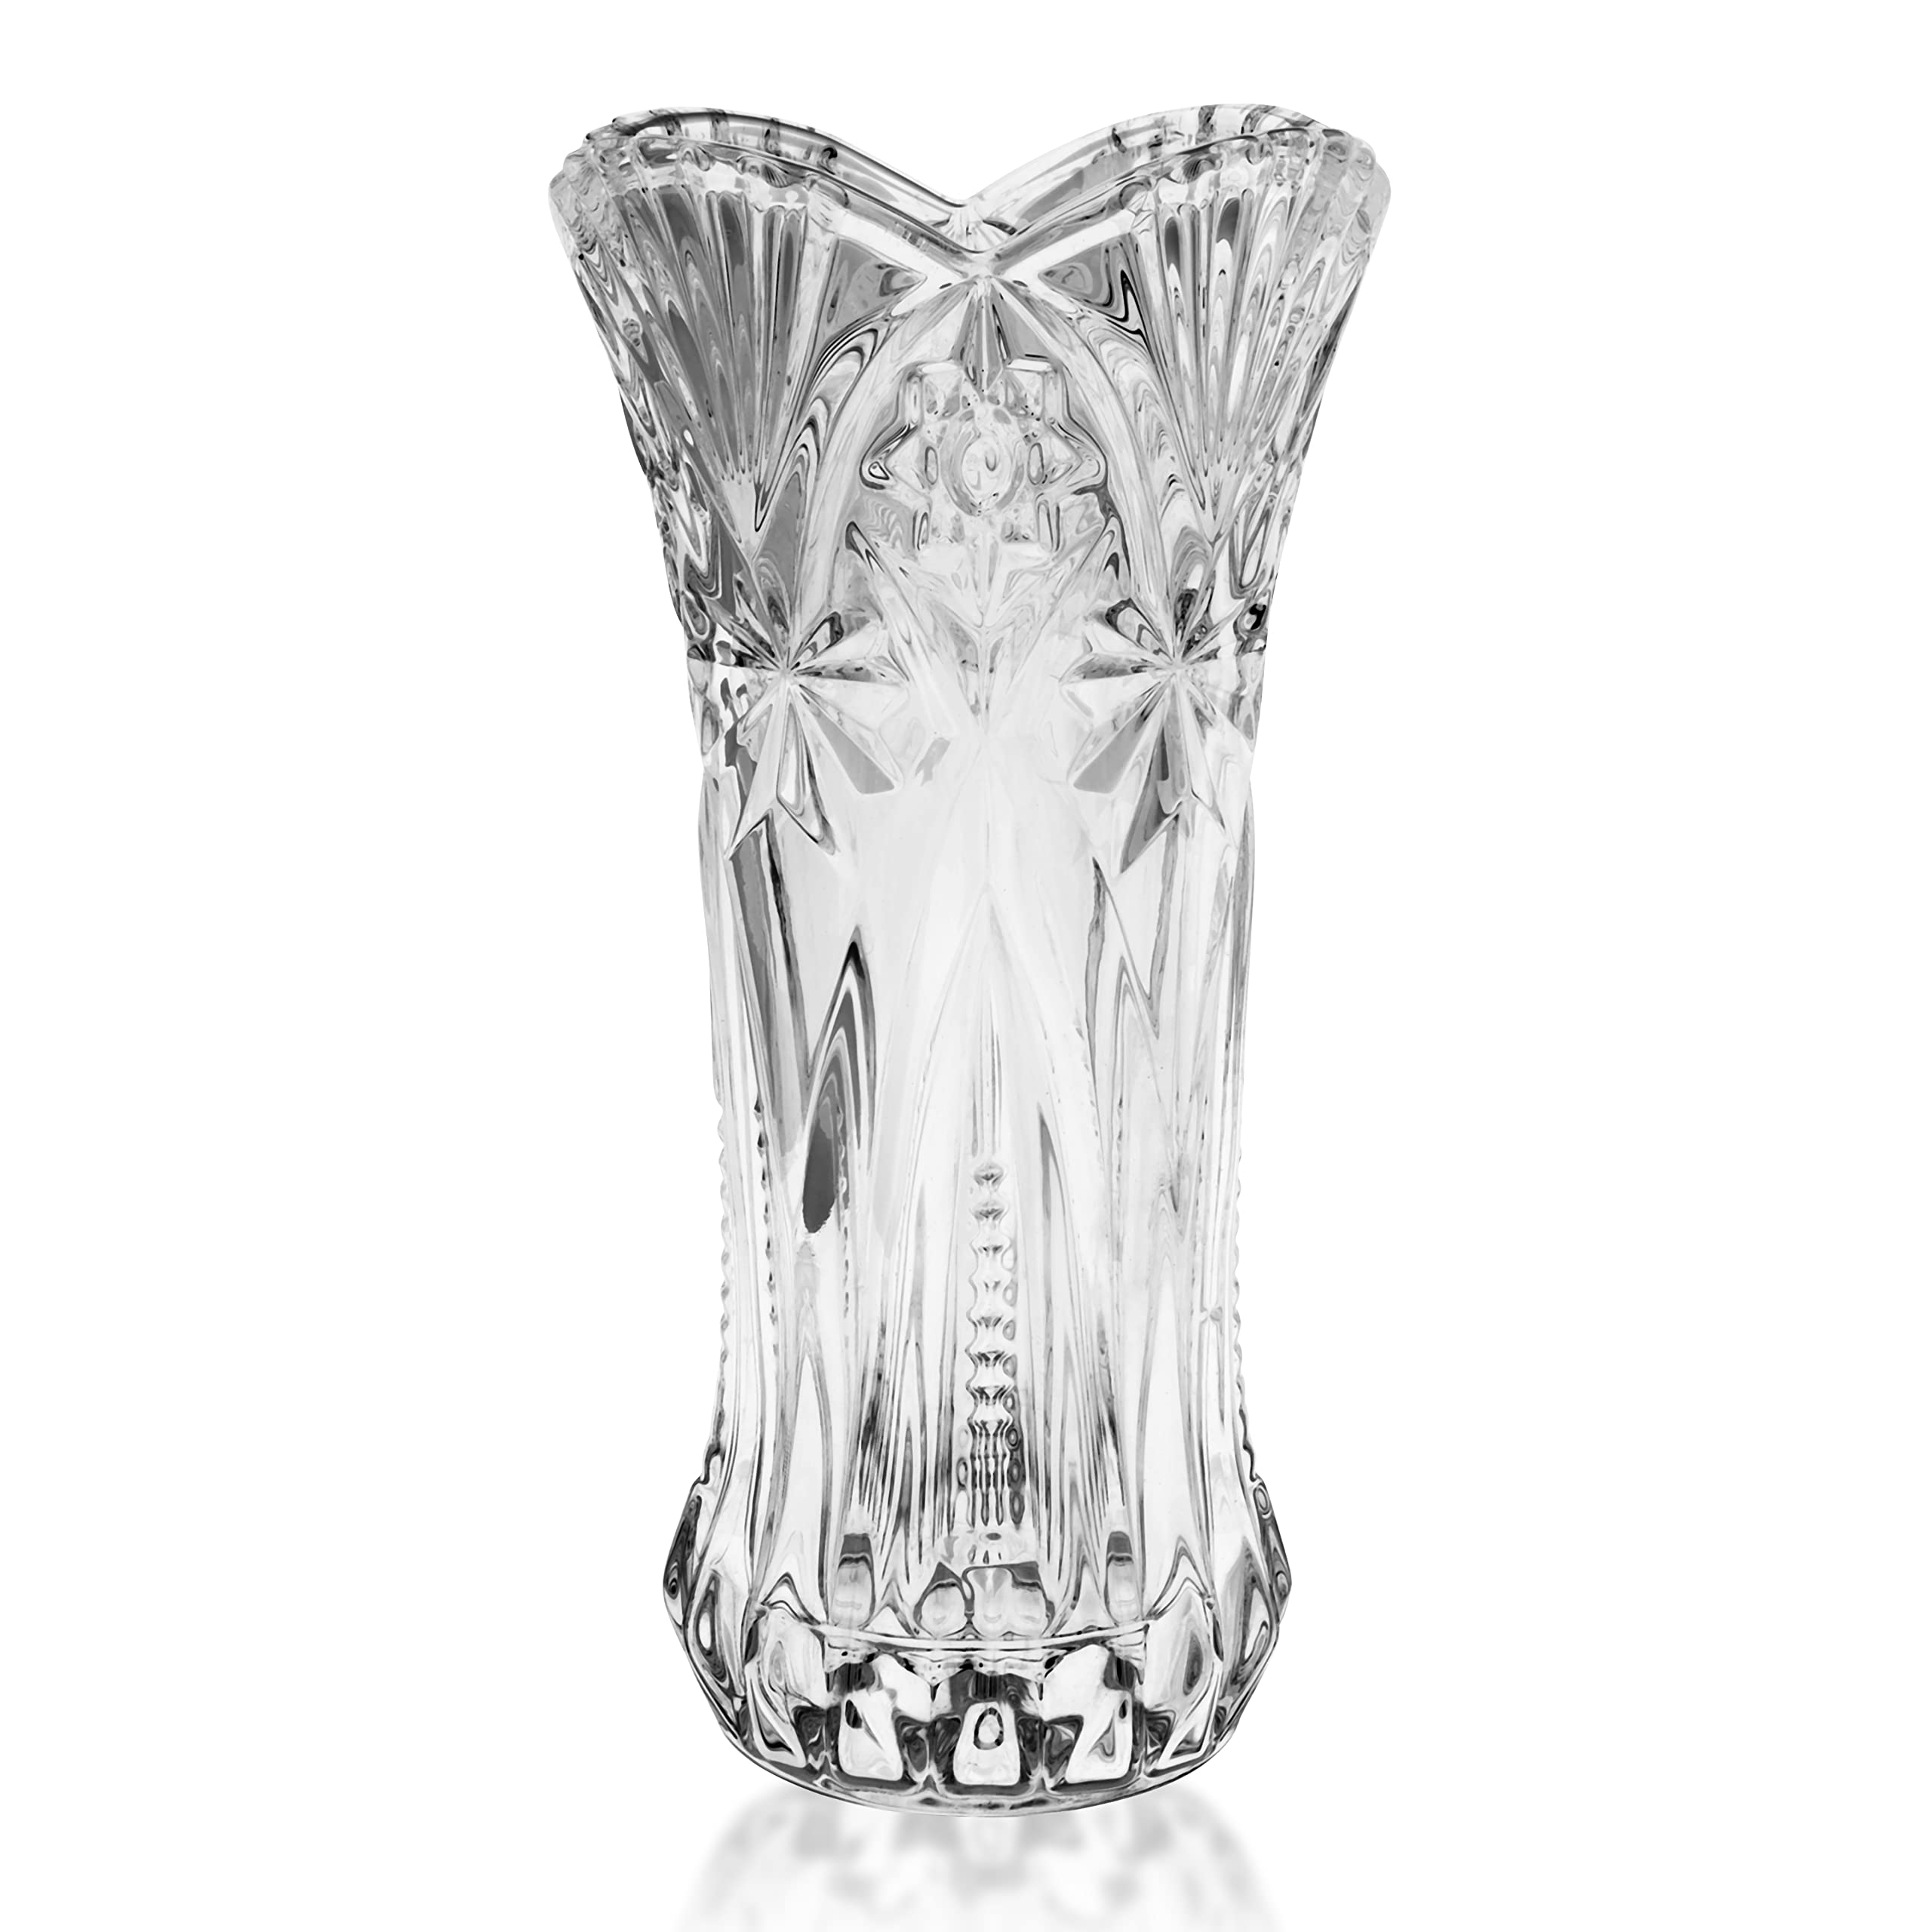 Populaire Kurtzy Vase Transparent en Cristal Clair - 29 cm - Vase en Verre Melodia Cylindrique Décoratif et Moderne pour Fleurs - Vase Verre pour Centre de Table et Décoration de Bureau N9g0FbG77 en France Online